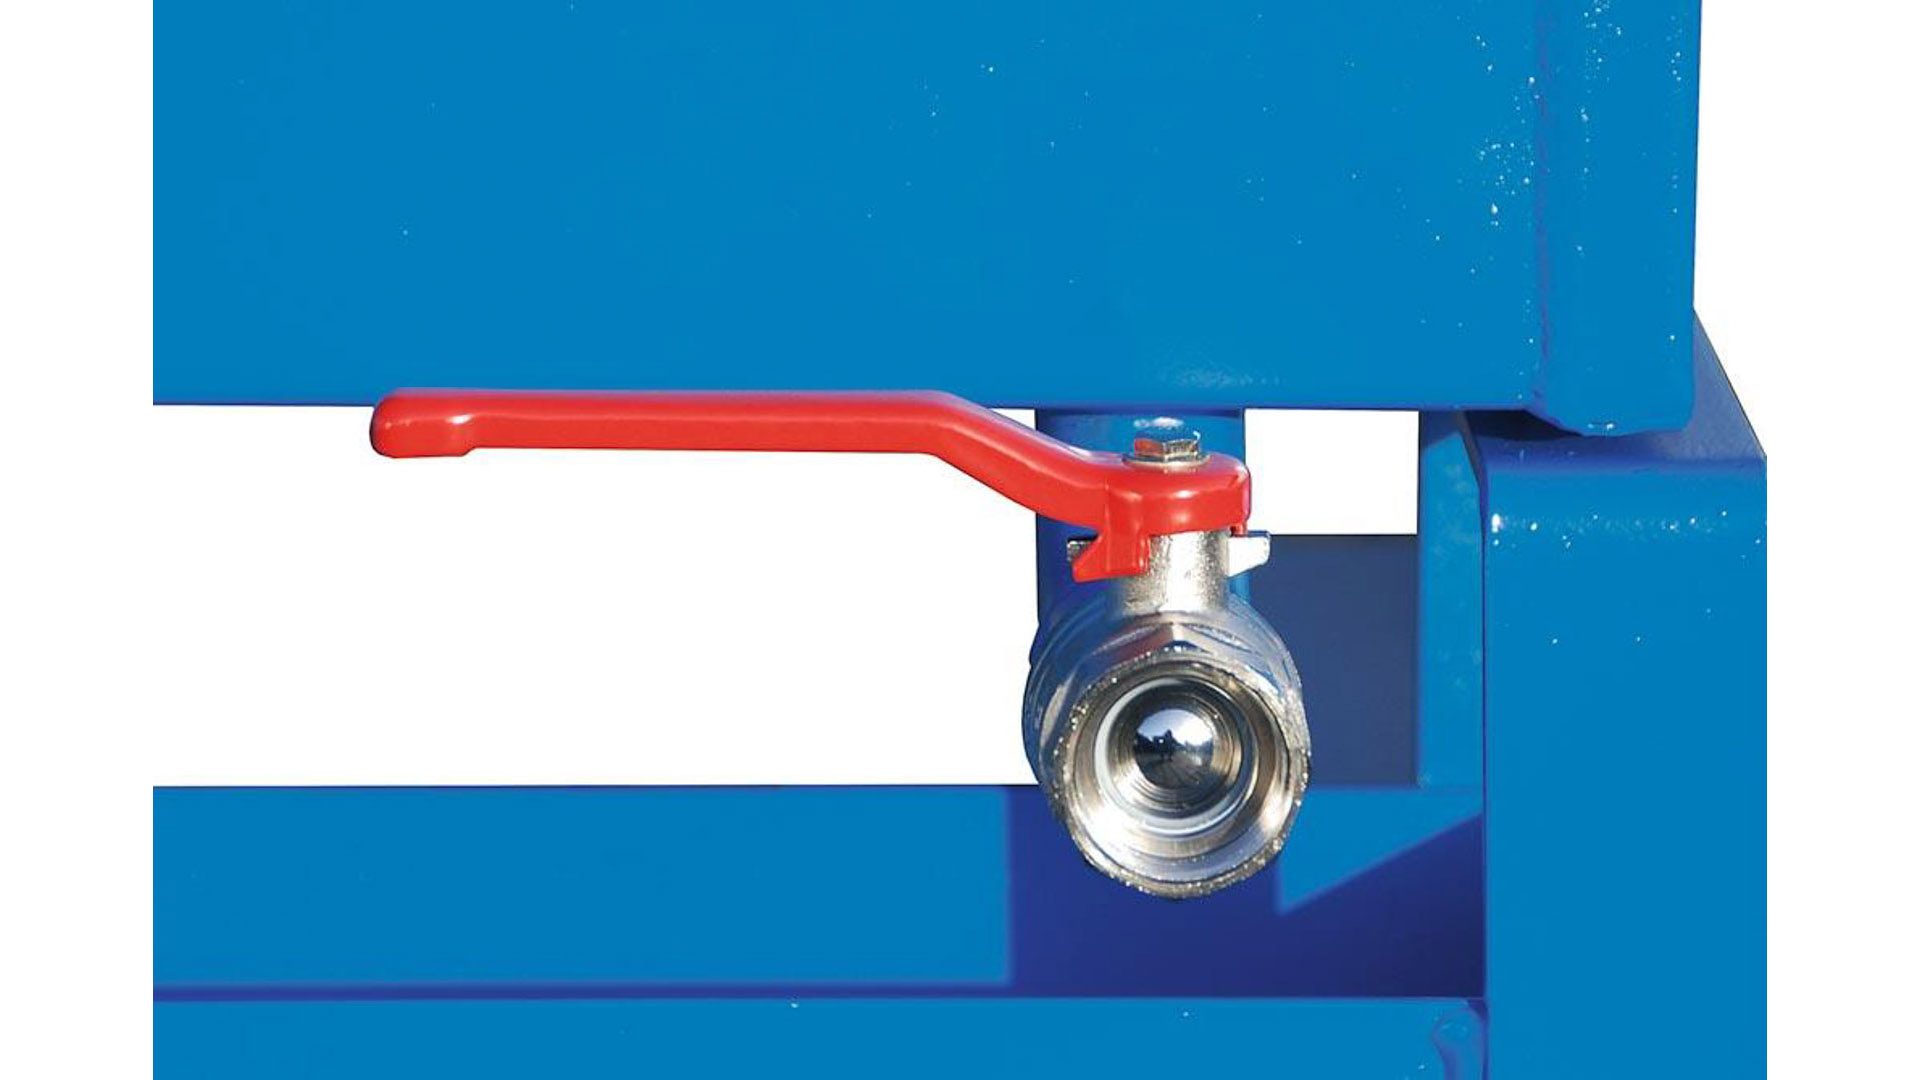 Späne-Selbstkippbehälter mit Abrollsystem, Volumen 1,20 cbm, LxBxH 1720x1070x1095 mm, lackiert RAL 5012 blau